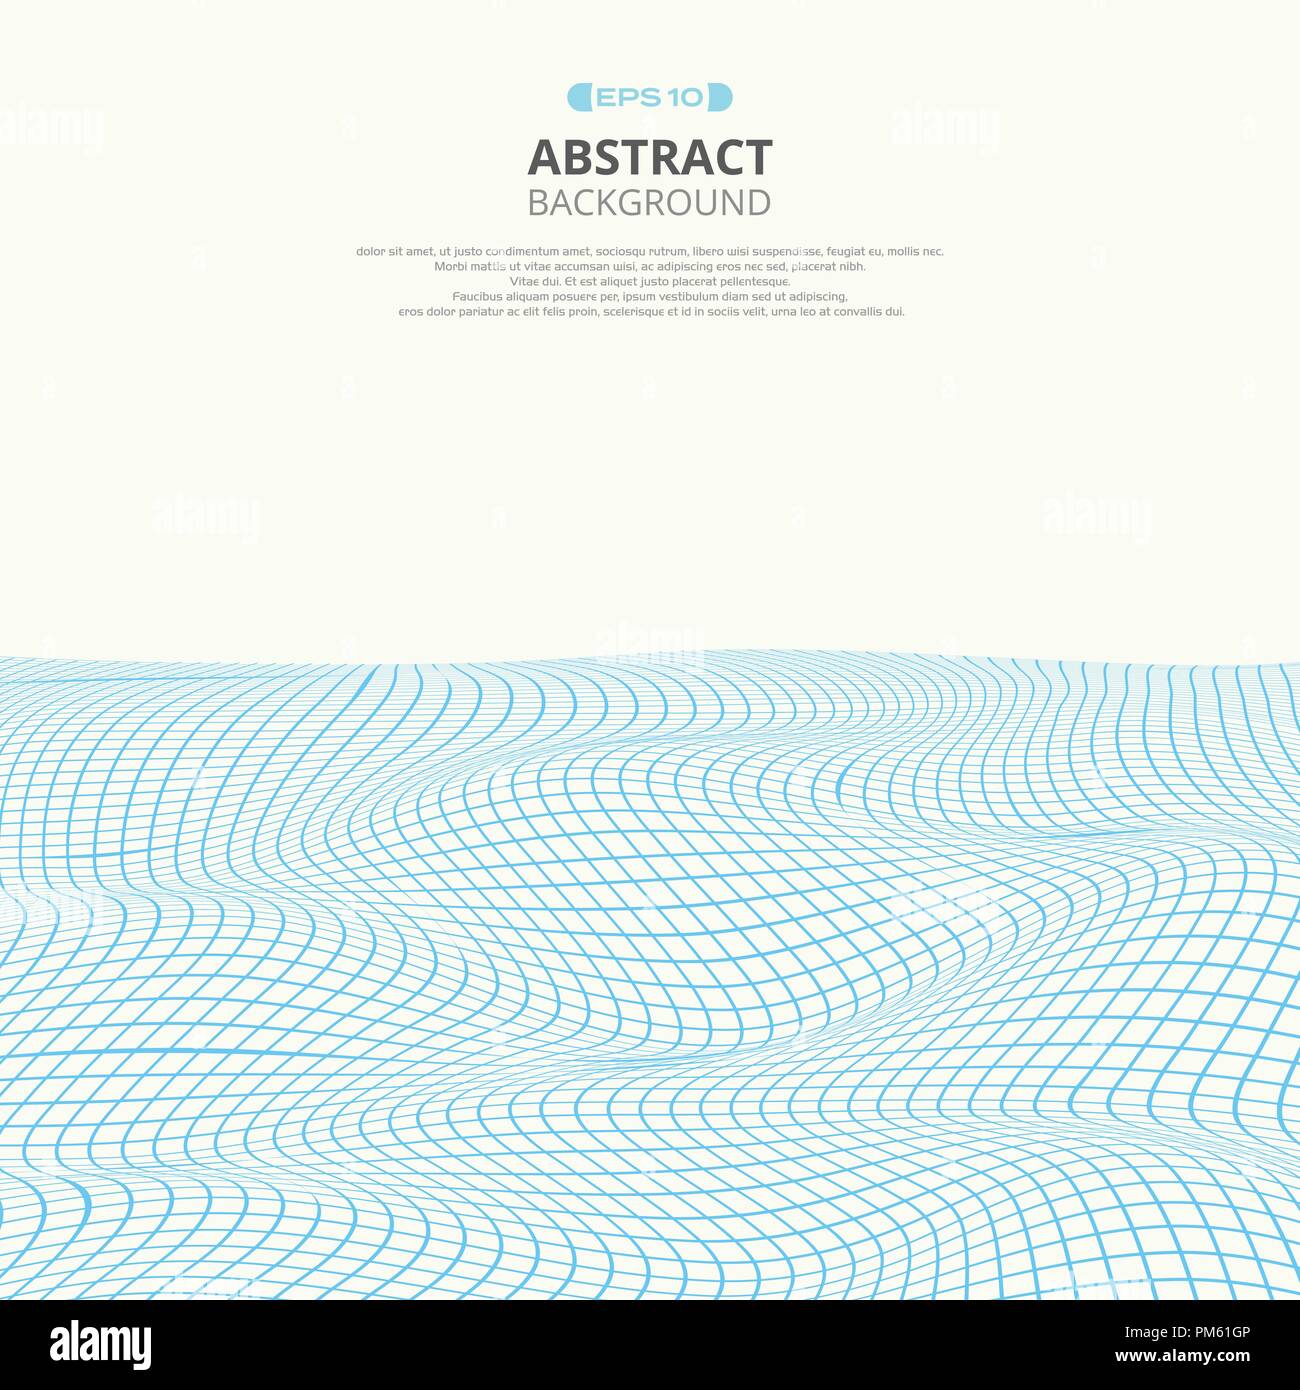 Résumé de la grille carrée bleue vague de mer avec arrière-plan de l'espace, illustration vector eps10 Illustration de Vecteur